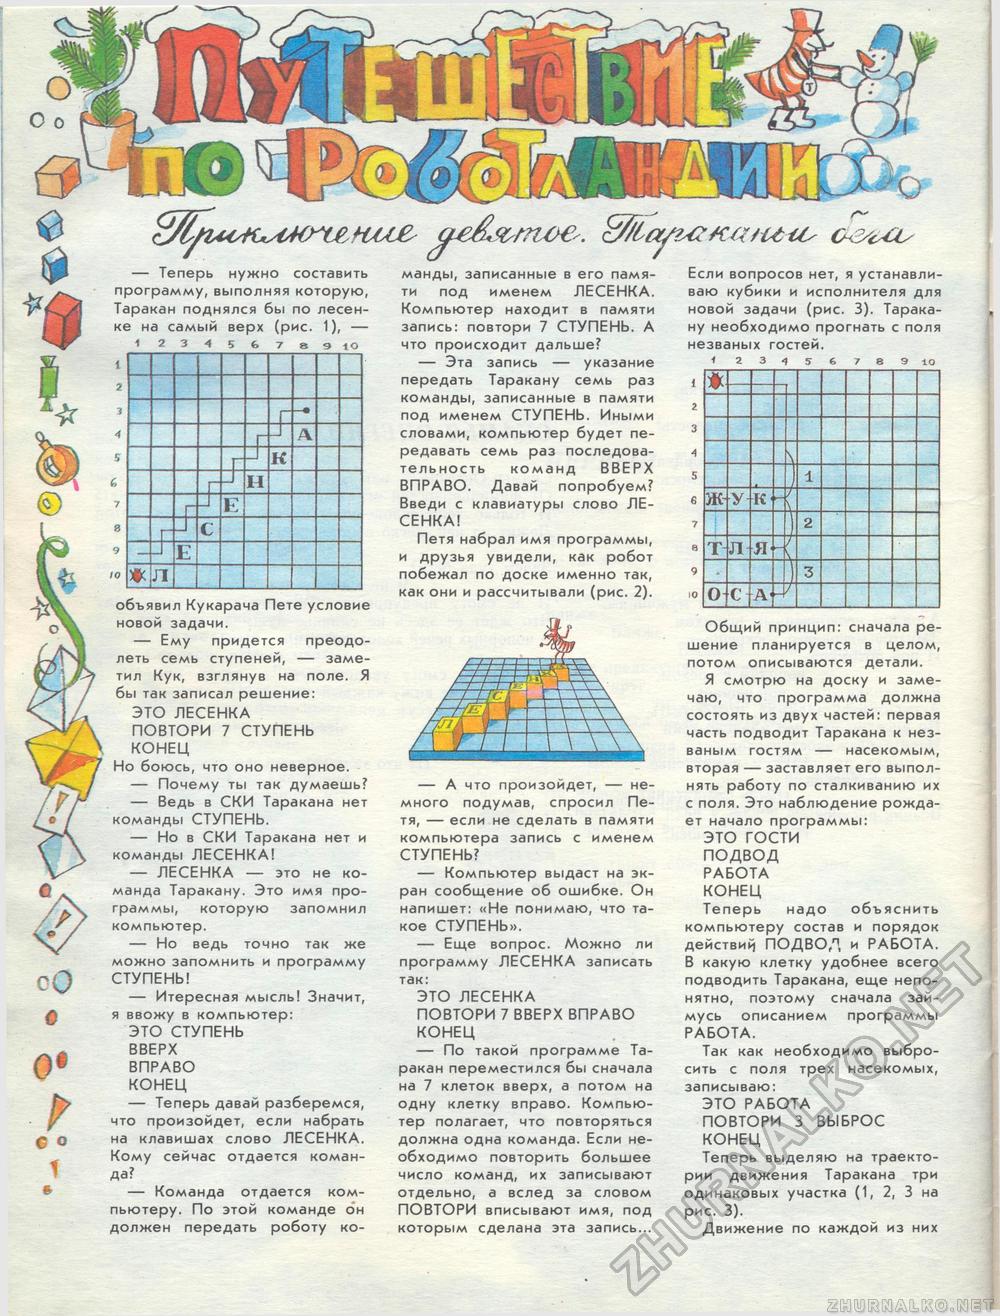  1989-12,  47